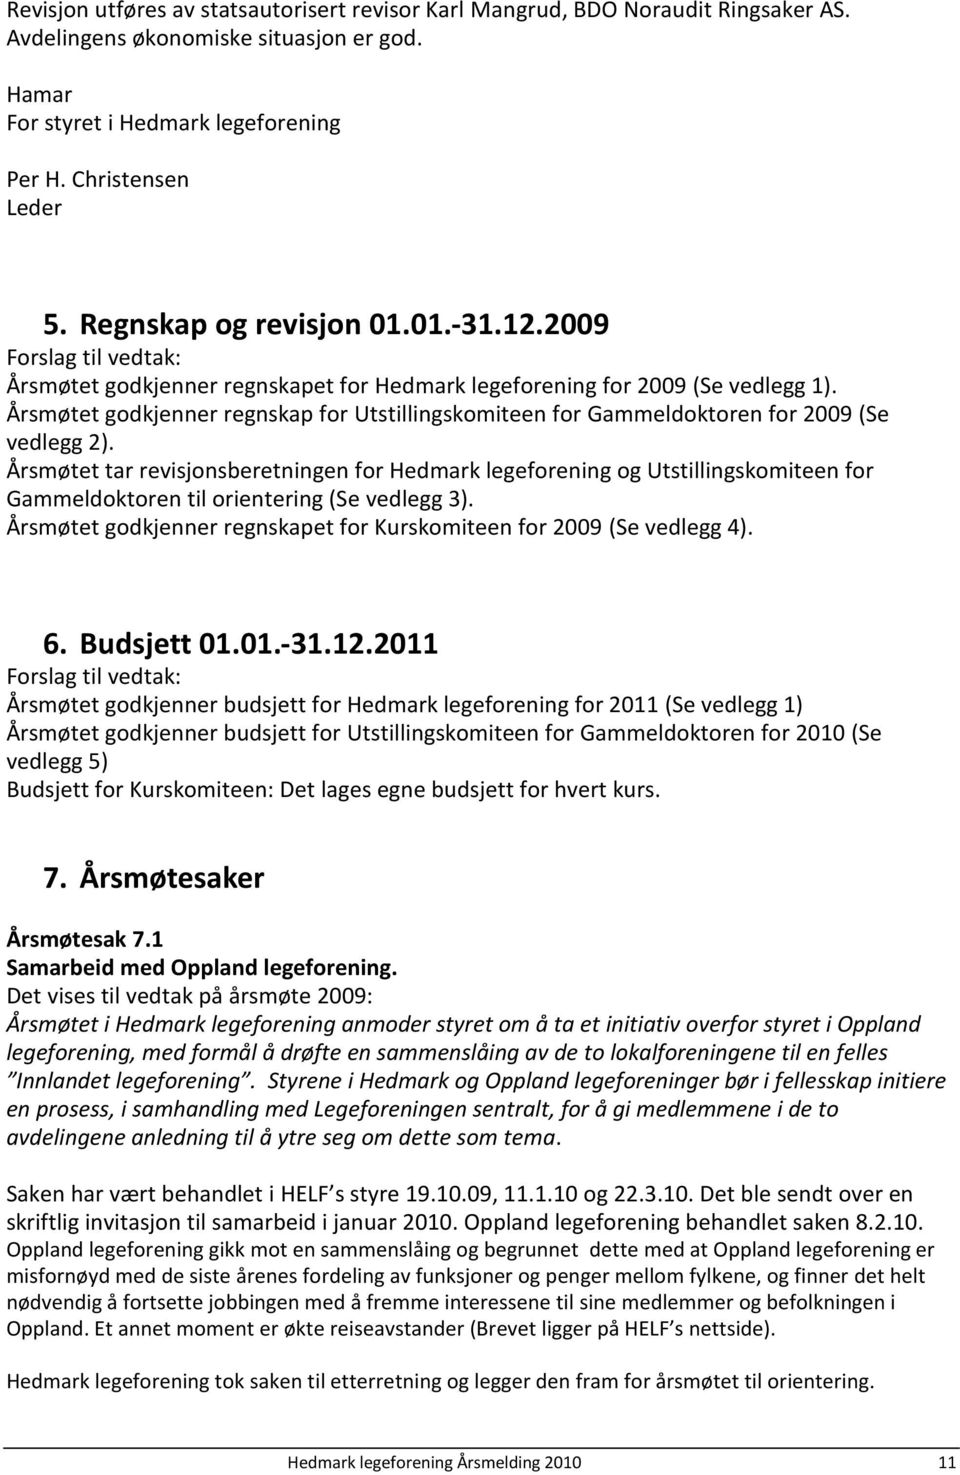 Årsmøtet godkjenner regnskap for Utstillingskomiteen for Gammeldoktoren for 2009 (Se vedlegg 2).